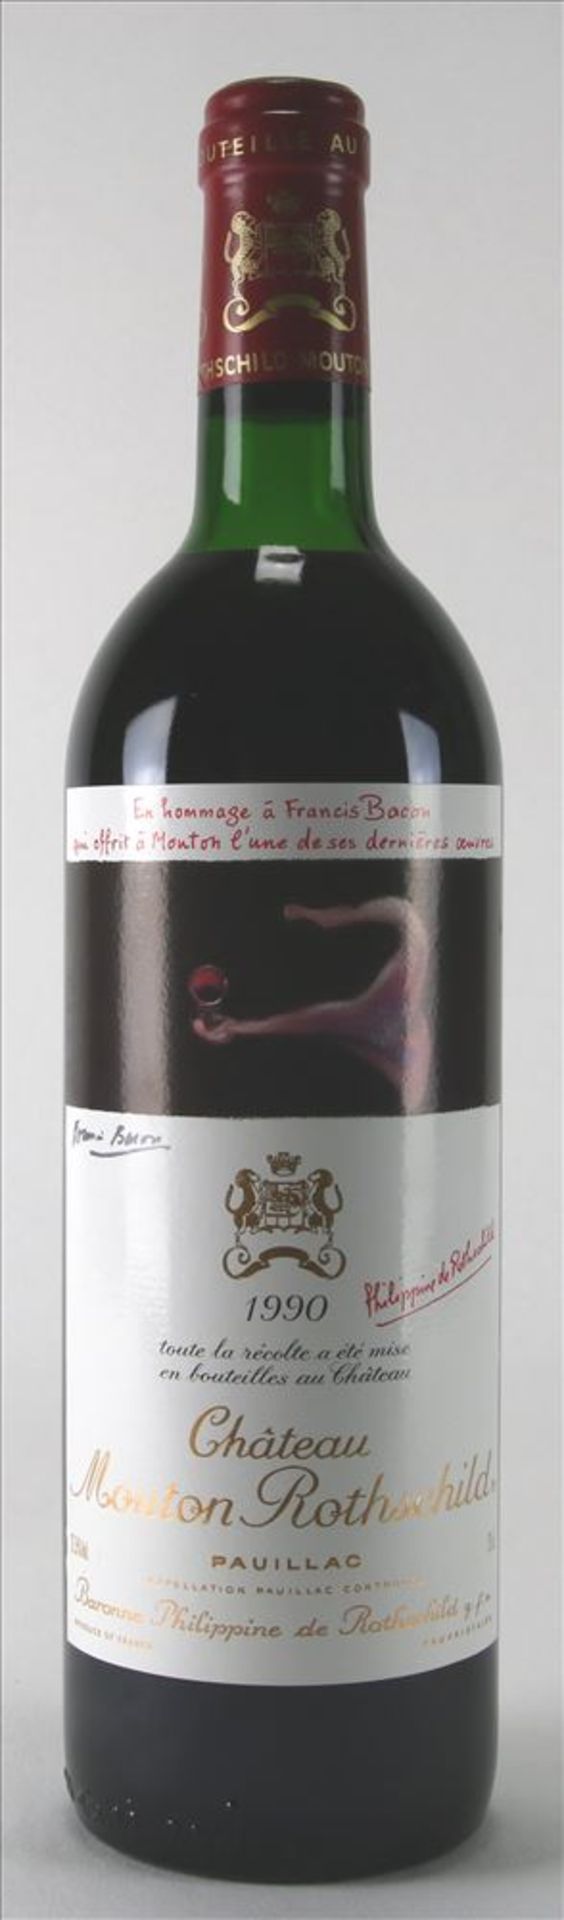 Flasche Chateau Mouton Rothschild 1990 Pauillac, 0,75 Liter mit dem originalen Etikett "Hommage à